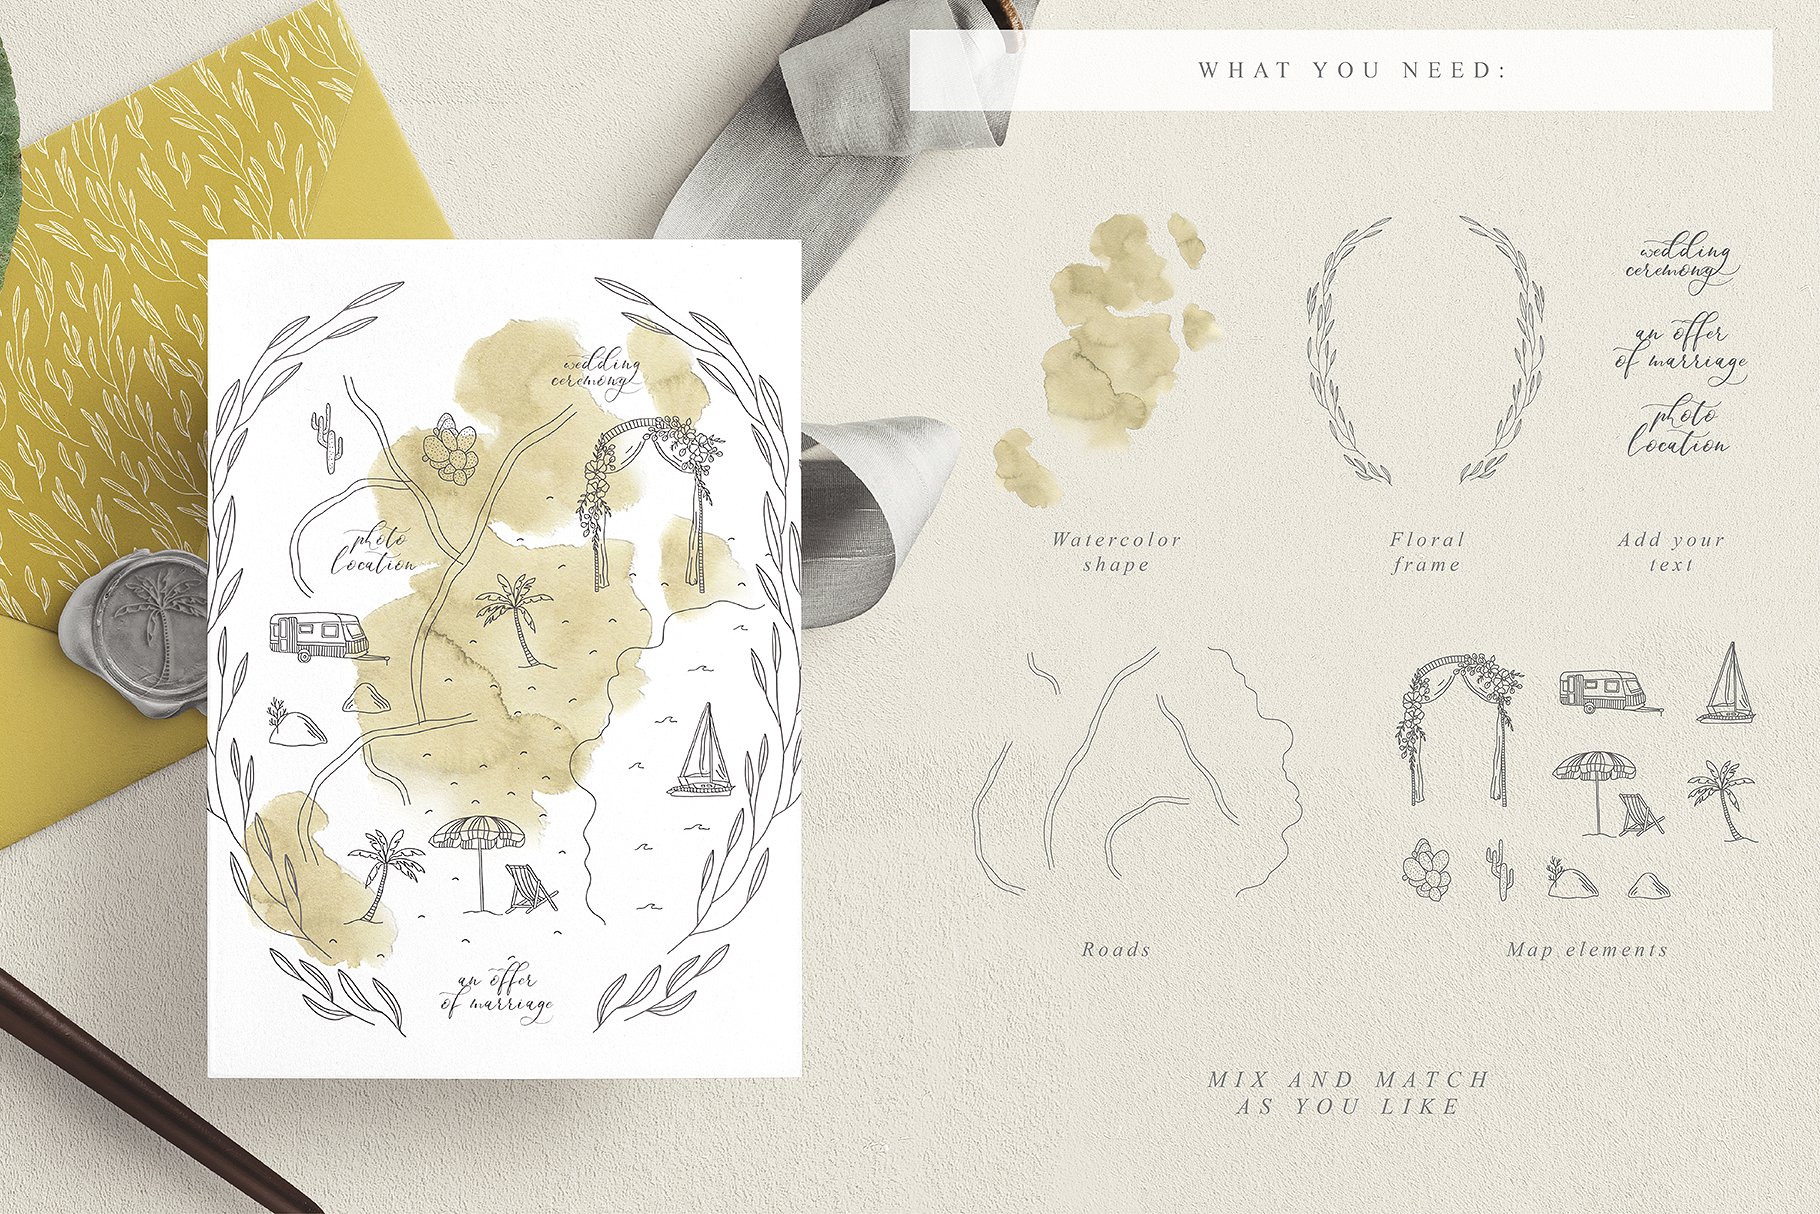 创意文艺风格婚礼邀请函地图设计素材包 Wedding Map Creator Collection插图12